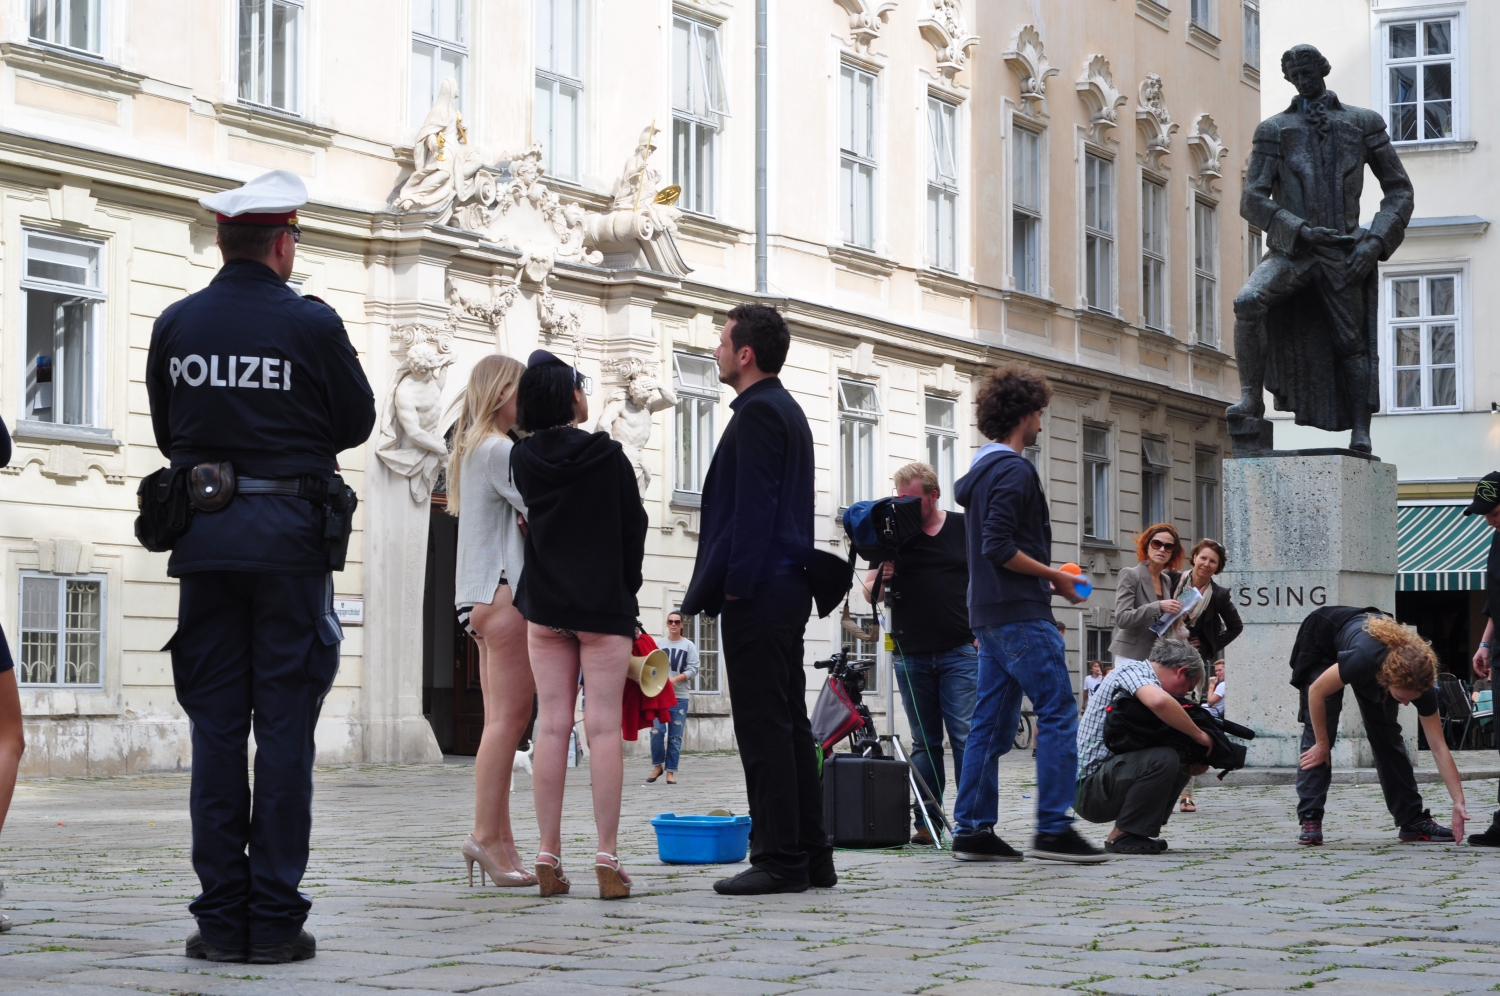 Filmforgatás – Forgatás Bécs történelmi központjában. Nincs lezárva az utca, lehet bámészkodni, lezserül kezelik a helyzetet. Itt éppen forgatási szünet volt, csak a rendőr állt rendületlenül a tőle elvárt pózban. (történelmi központ, Bécs) - (Fotó: Laslavic Tímea)